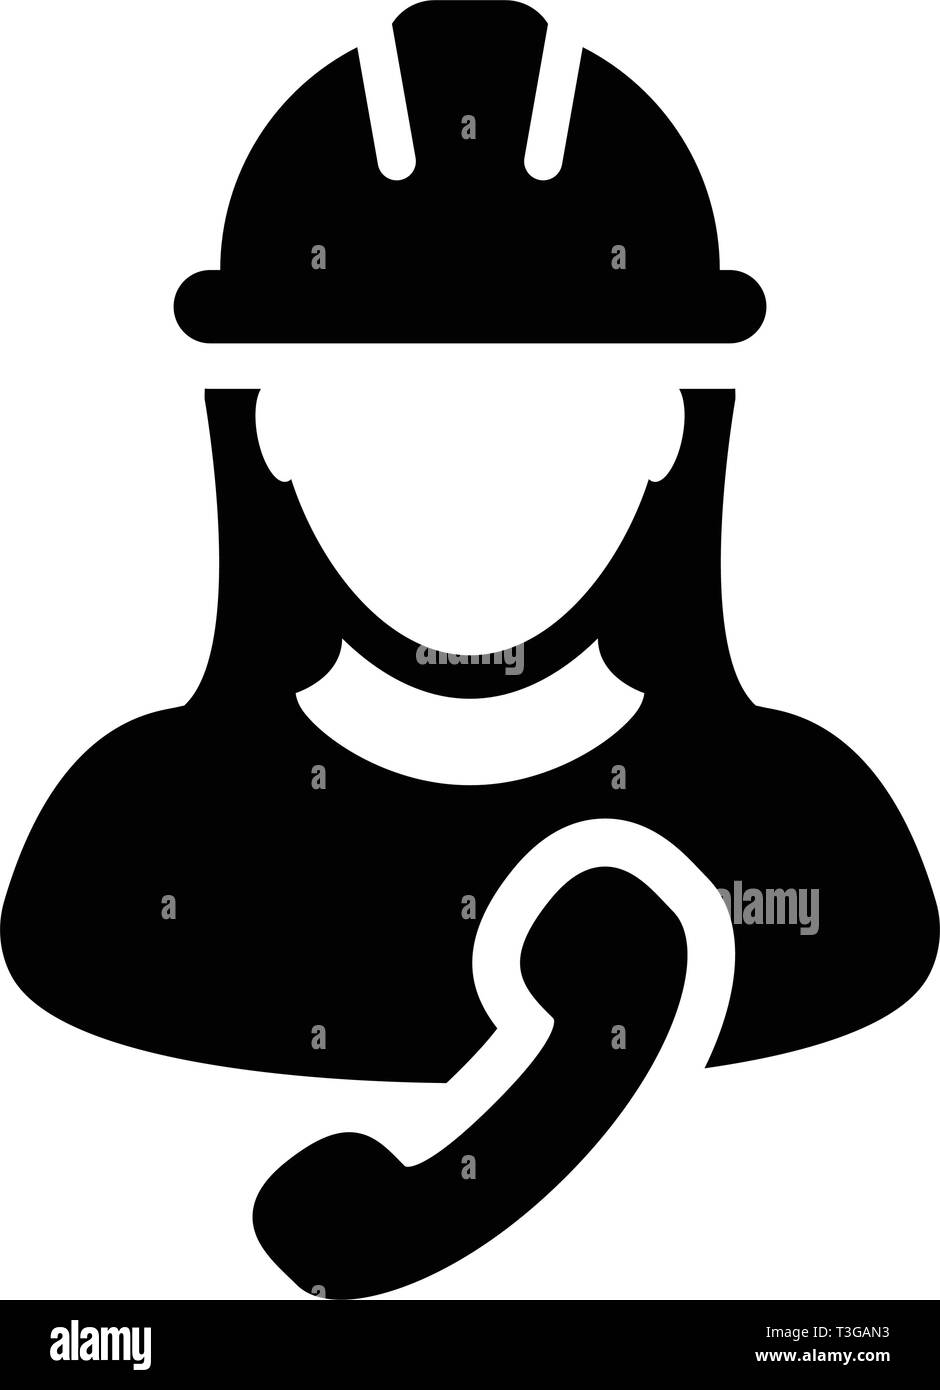 Bauarbeiter Symbol Vektor weibliche Person Profil Avatar mit Telefon und Schutzhelm  Helm in Glyph Piktogramm Abbildung Stock-Vektorgrafik - Alamy